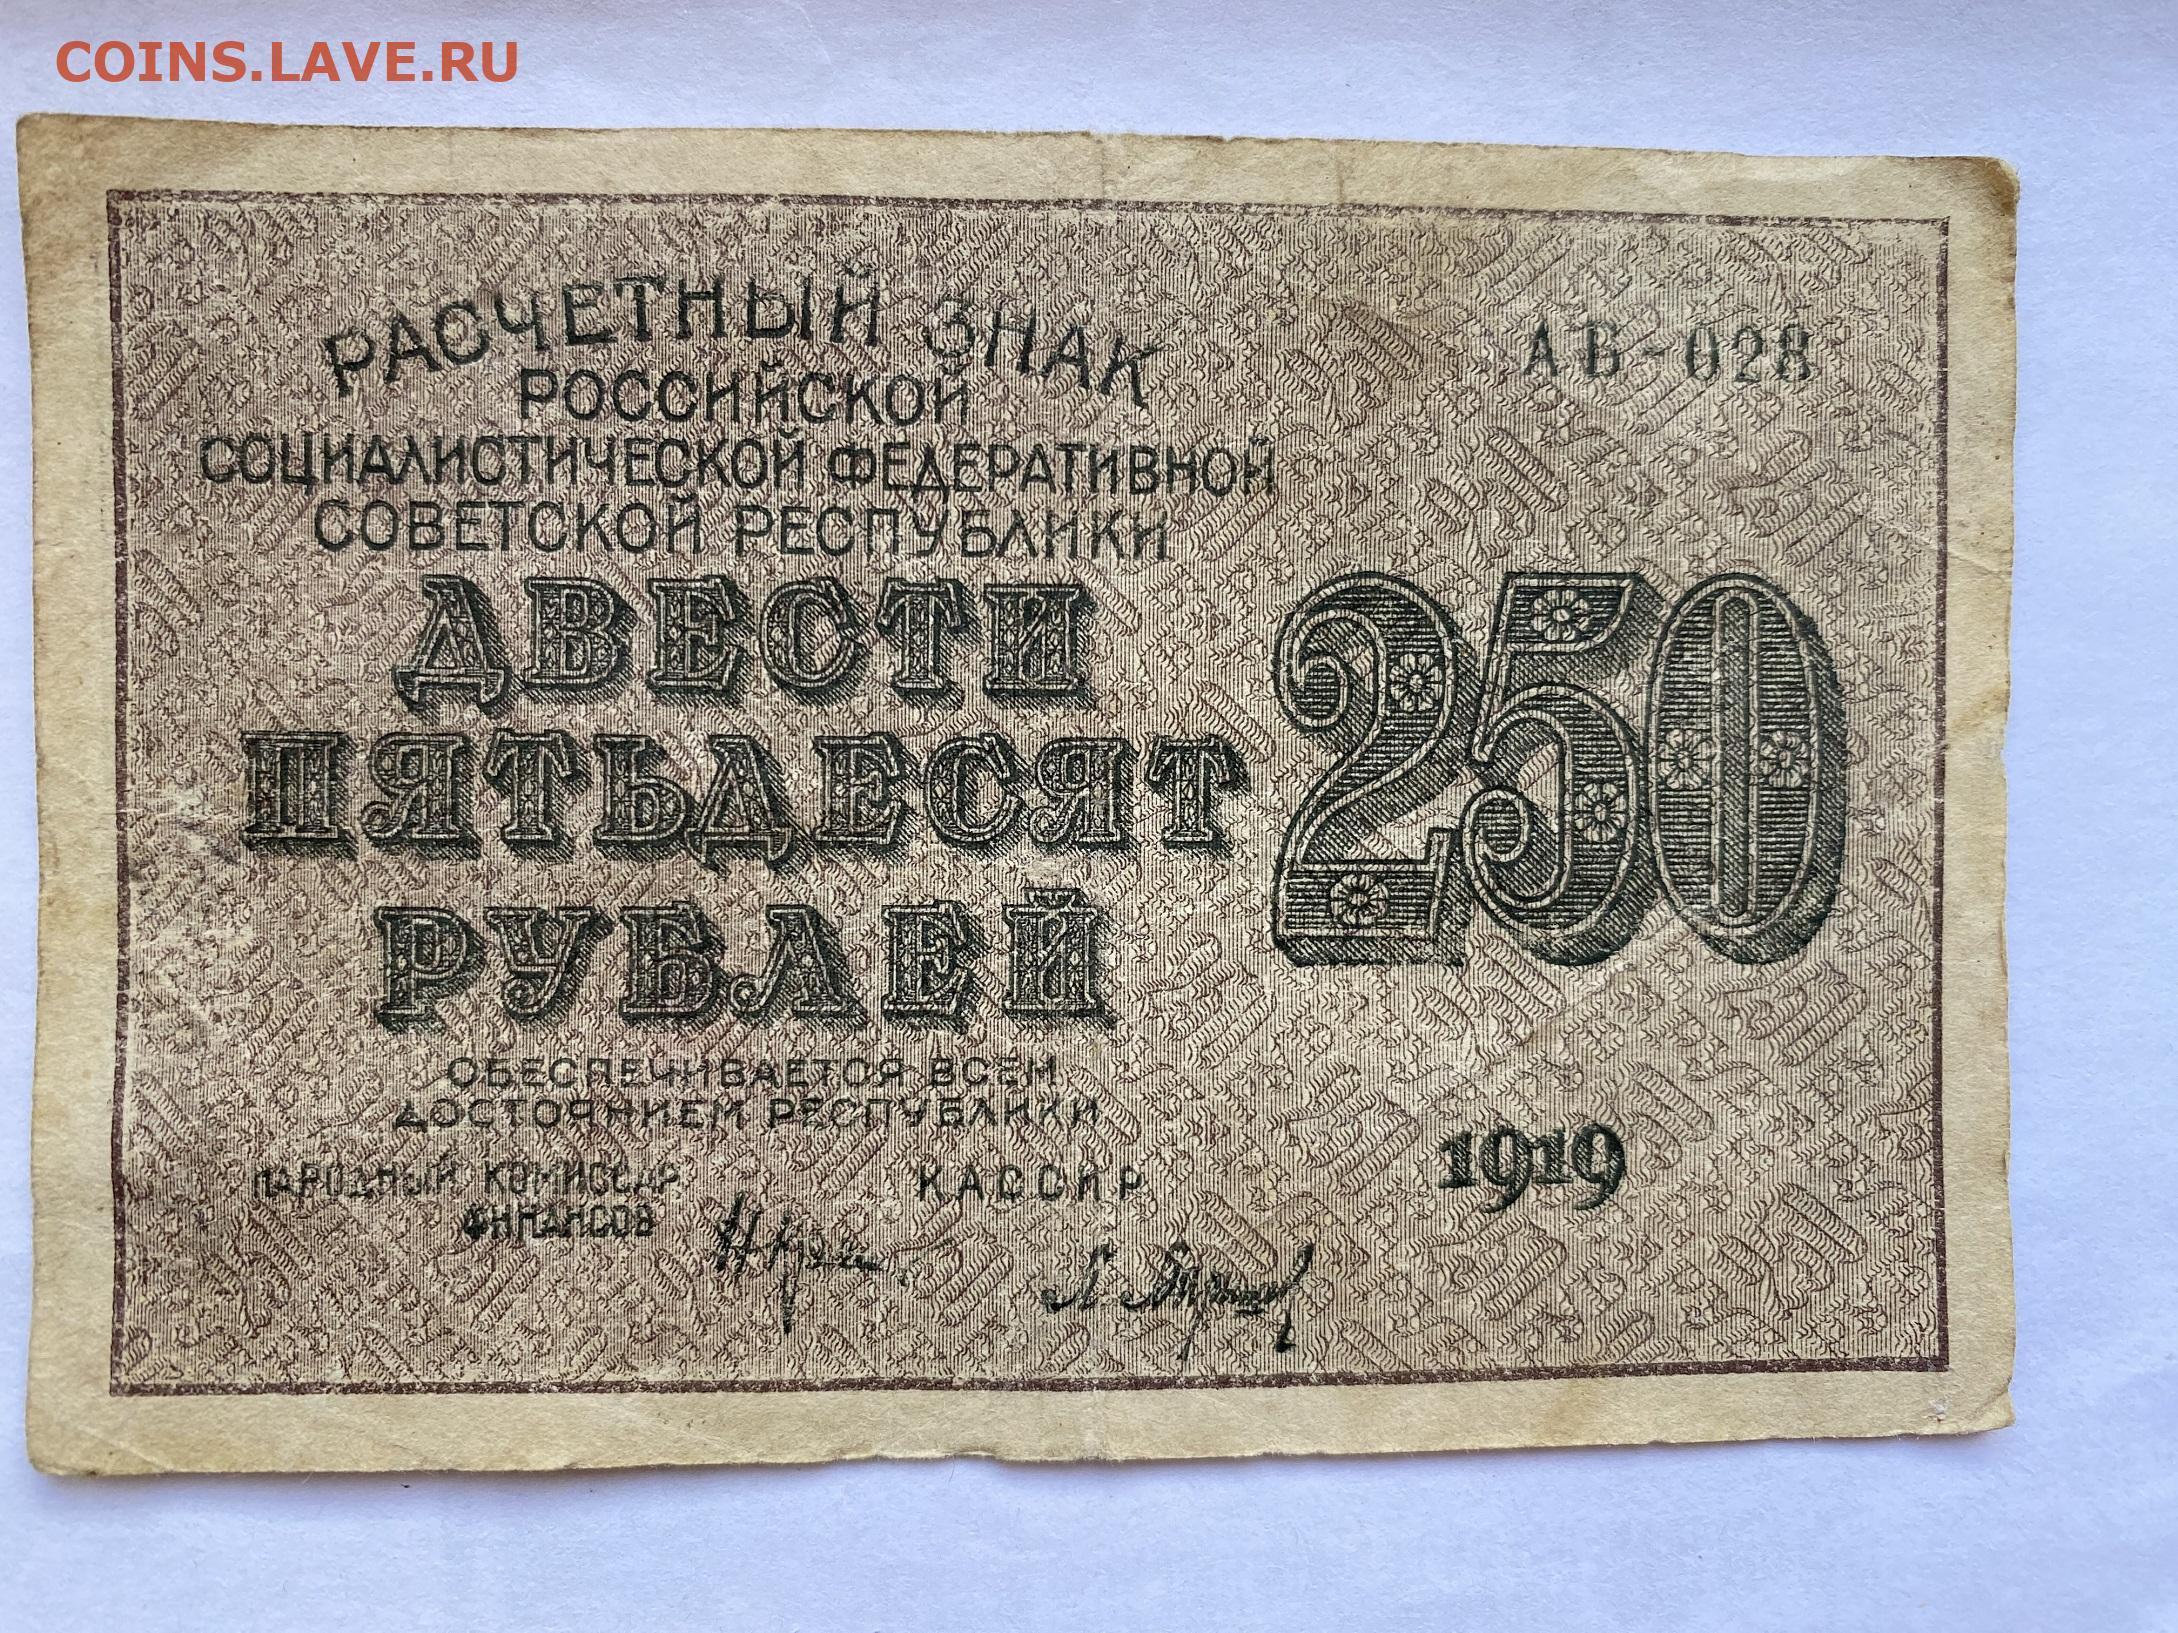 9 250 в рублях. 250 Рублей 1917 года. Купюра 250 рублей 1917 года. 250 Рублей. Расчетные знаки РСФСР 1919 года.